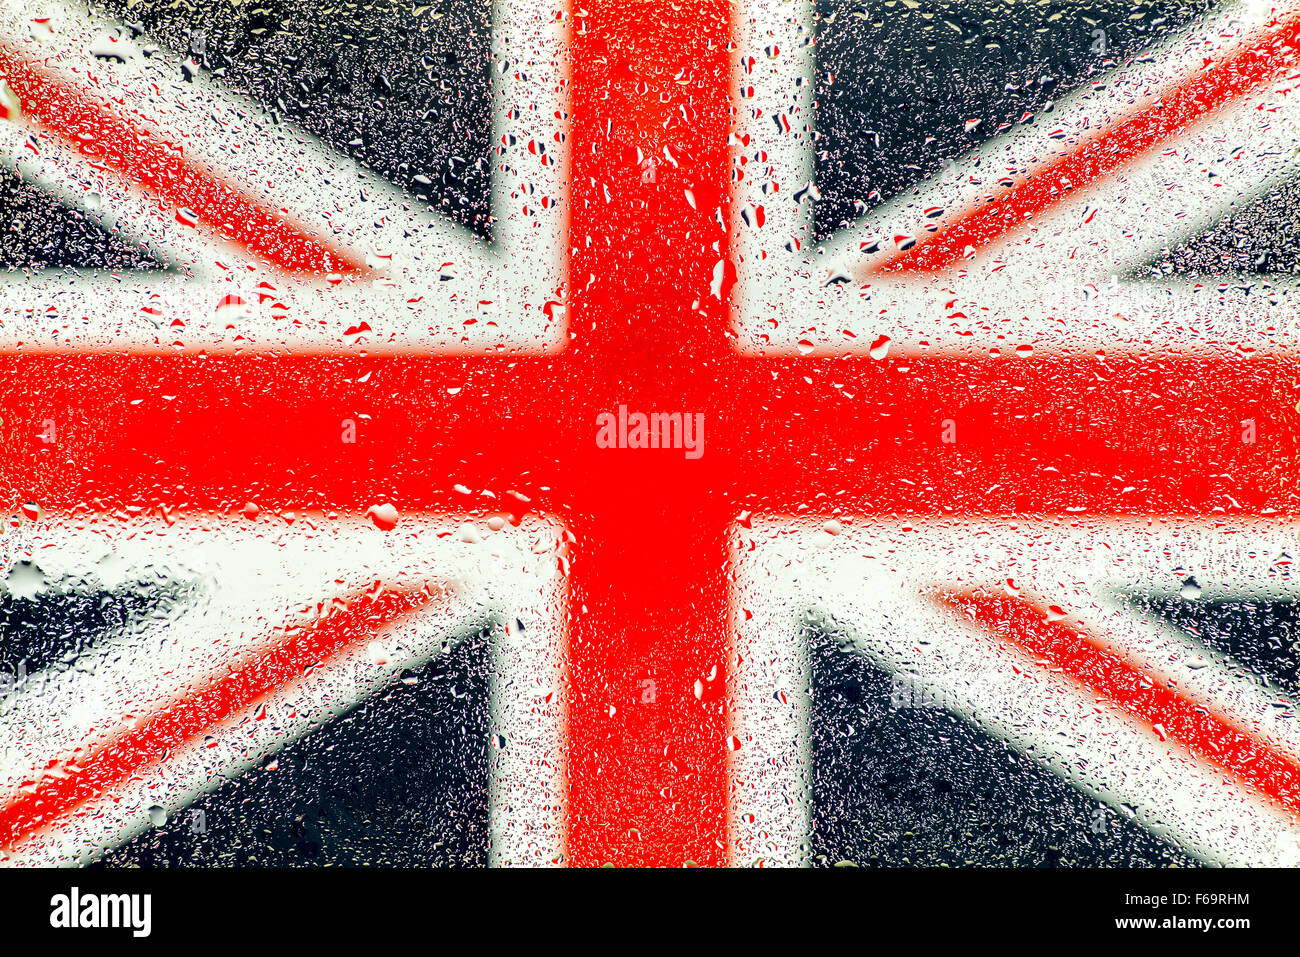 Vereinigtes Königreich-Union Jack-Flagge durch einen verregneten Fenster gesehen Stockfoto